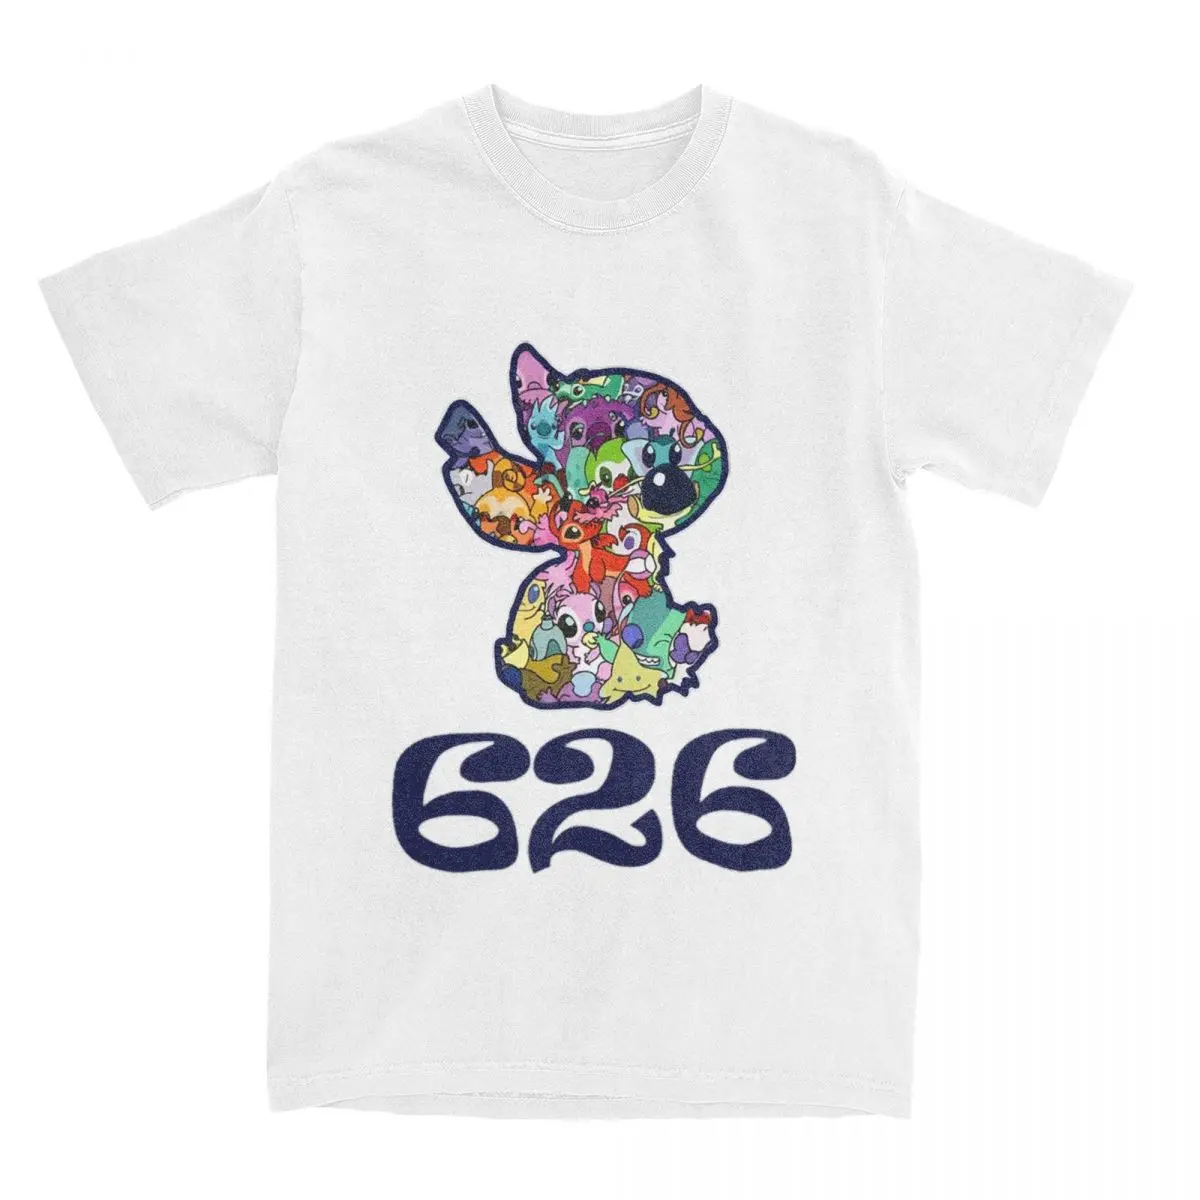 Мужская женская футболка с рисунком из мультфильма 626 стежков, хлопковая футболка, Одежда для хипстеров, футболки для взрослых